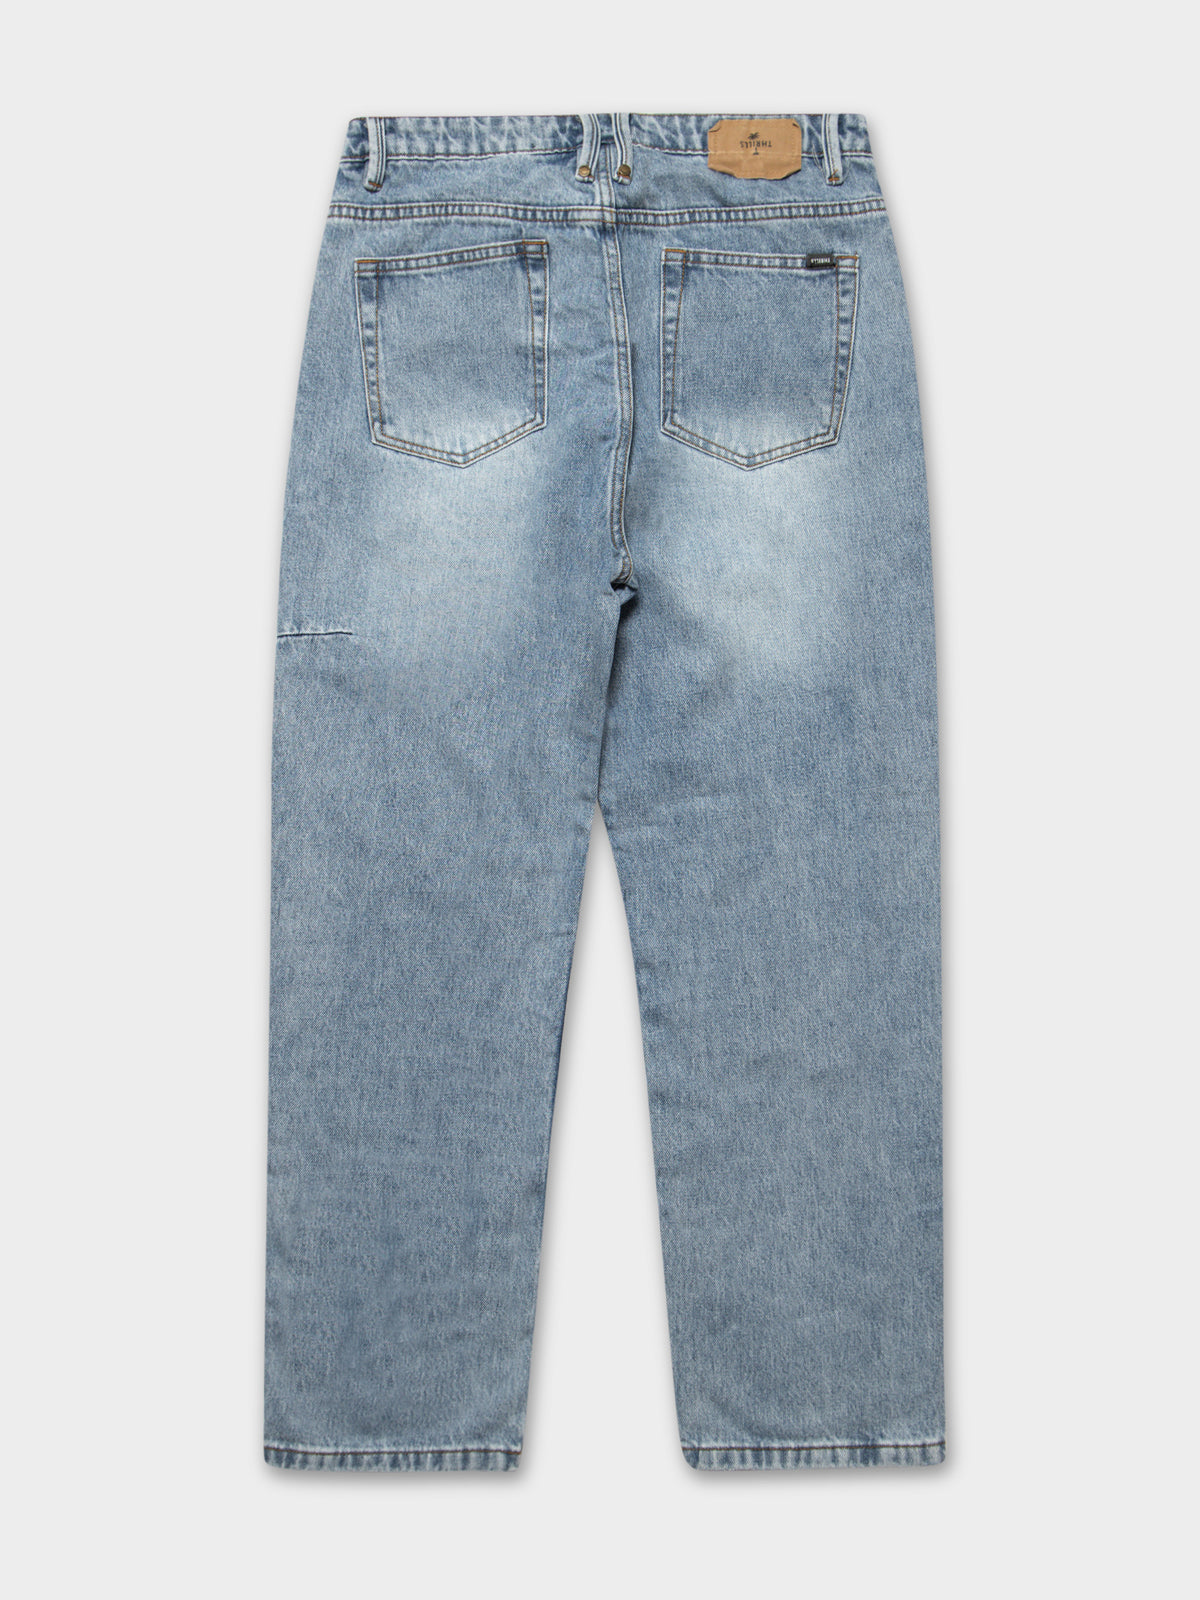 Slacker Jeans in Aged Blue